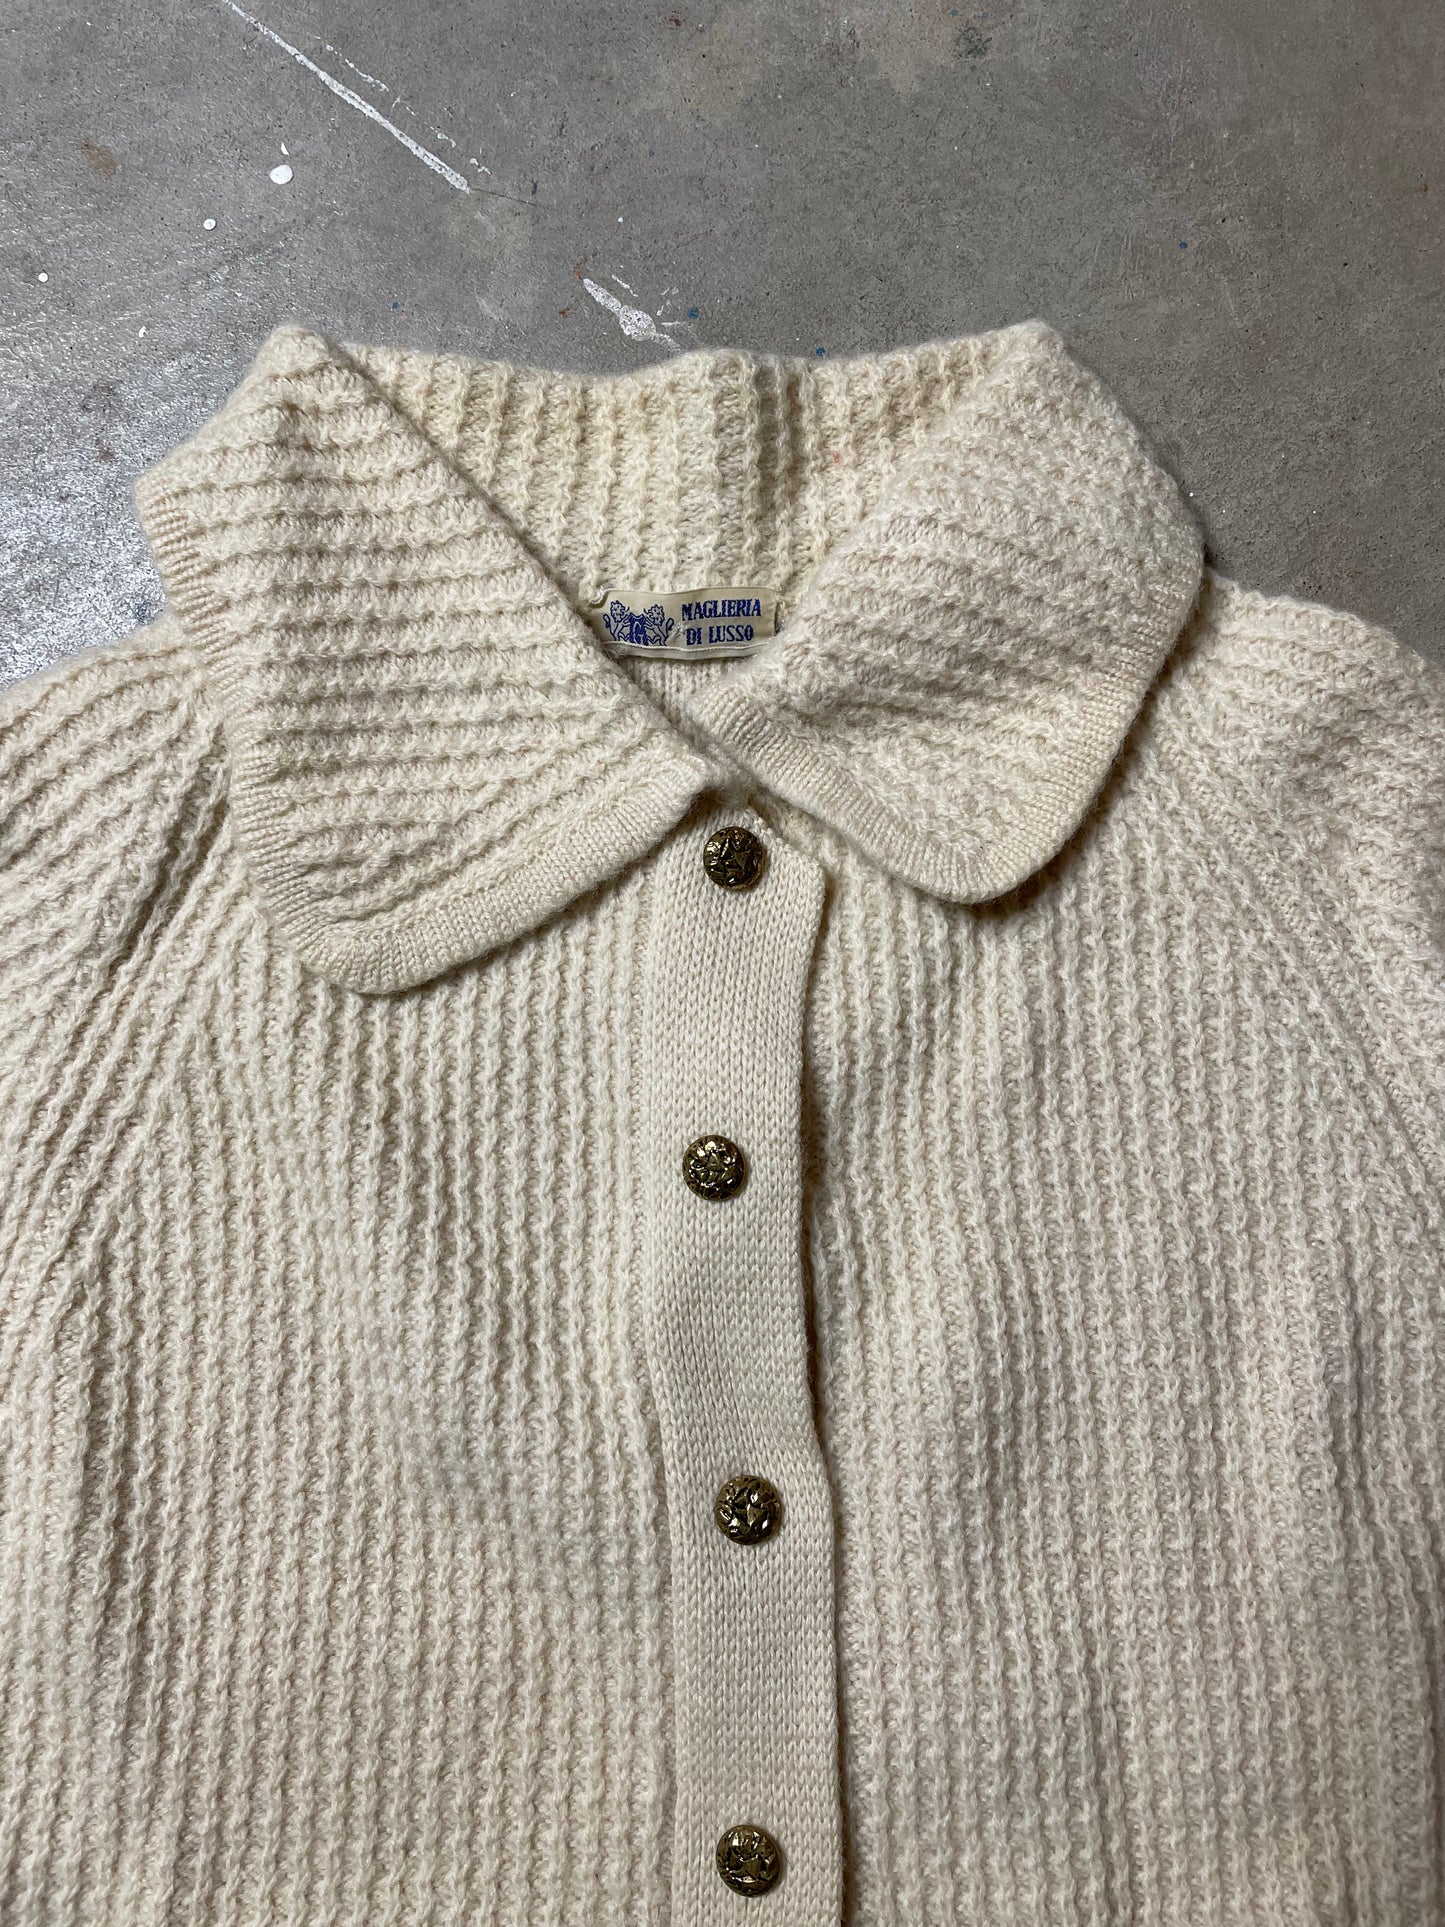 1960s Magliera Di Lusso Sweater